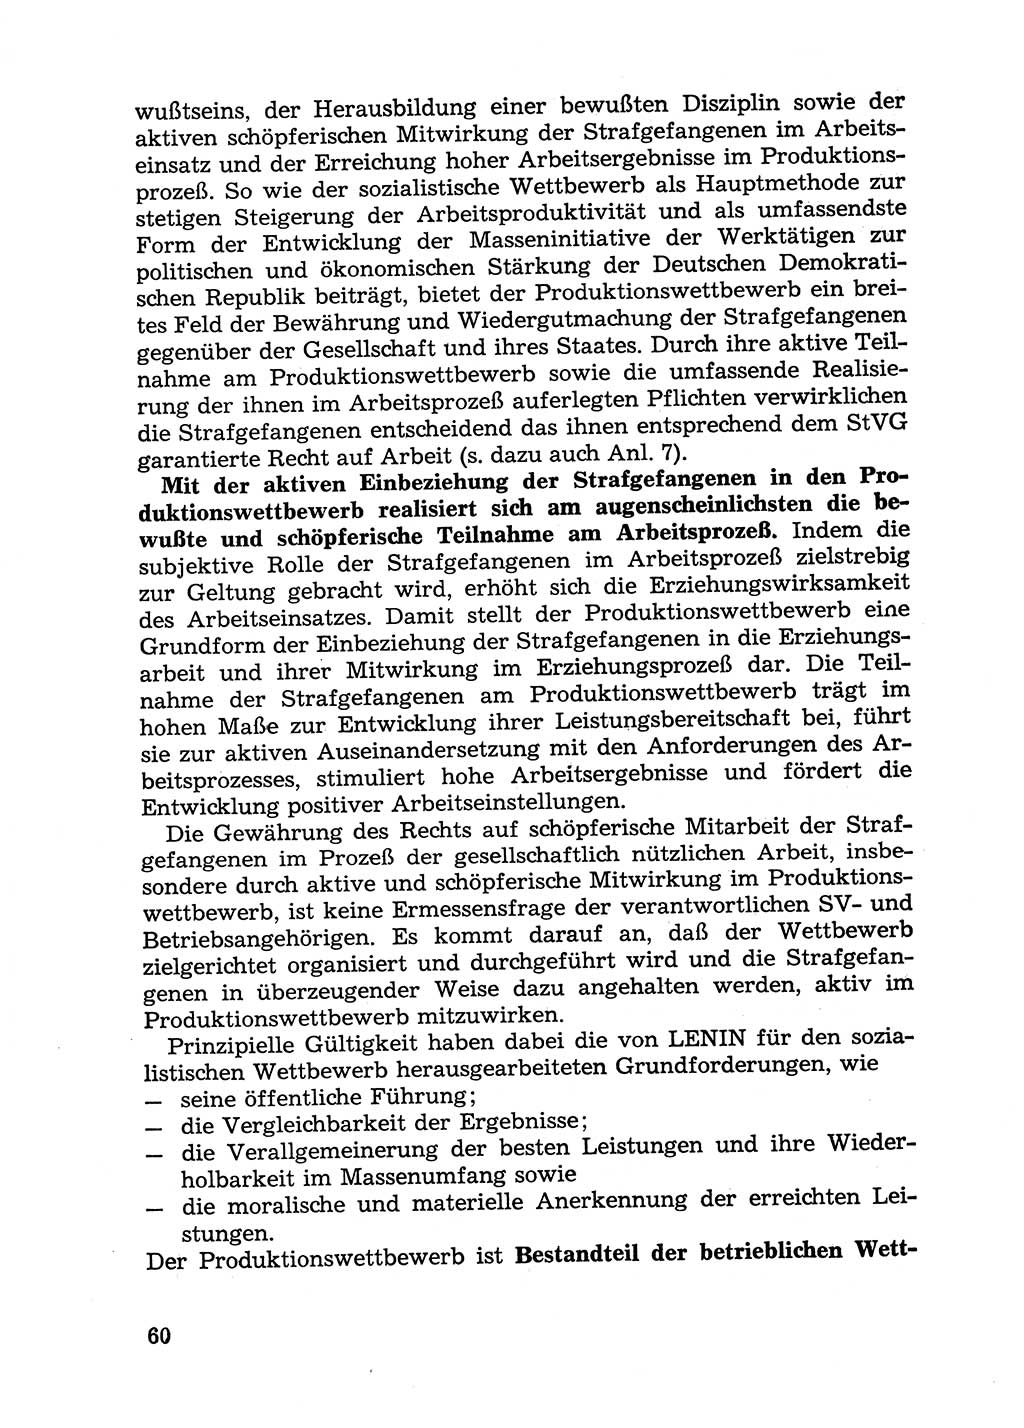 Handbuch für Betriebsangehörige, Abteilung Strafvollzug (SV) [Ministerium des Innern (MdI) Deutsche Demokratische Republik (DDR)] 1981, Seite 60 (Hb. BA Abt. SV MdI DDR 1981, S. 60)